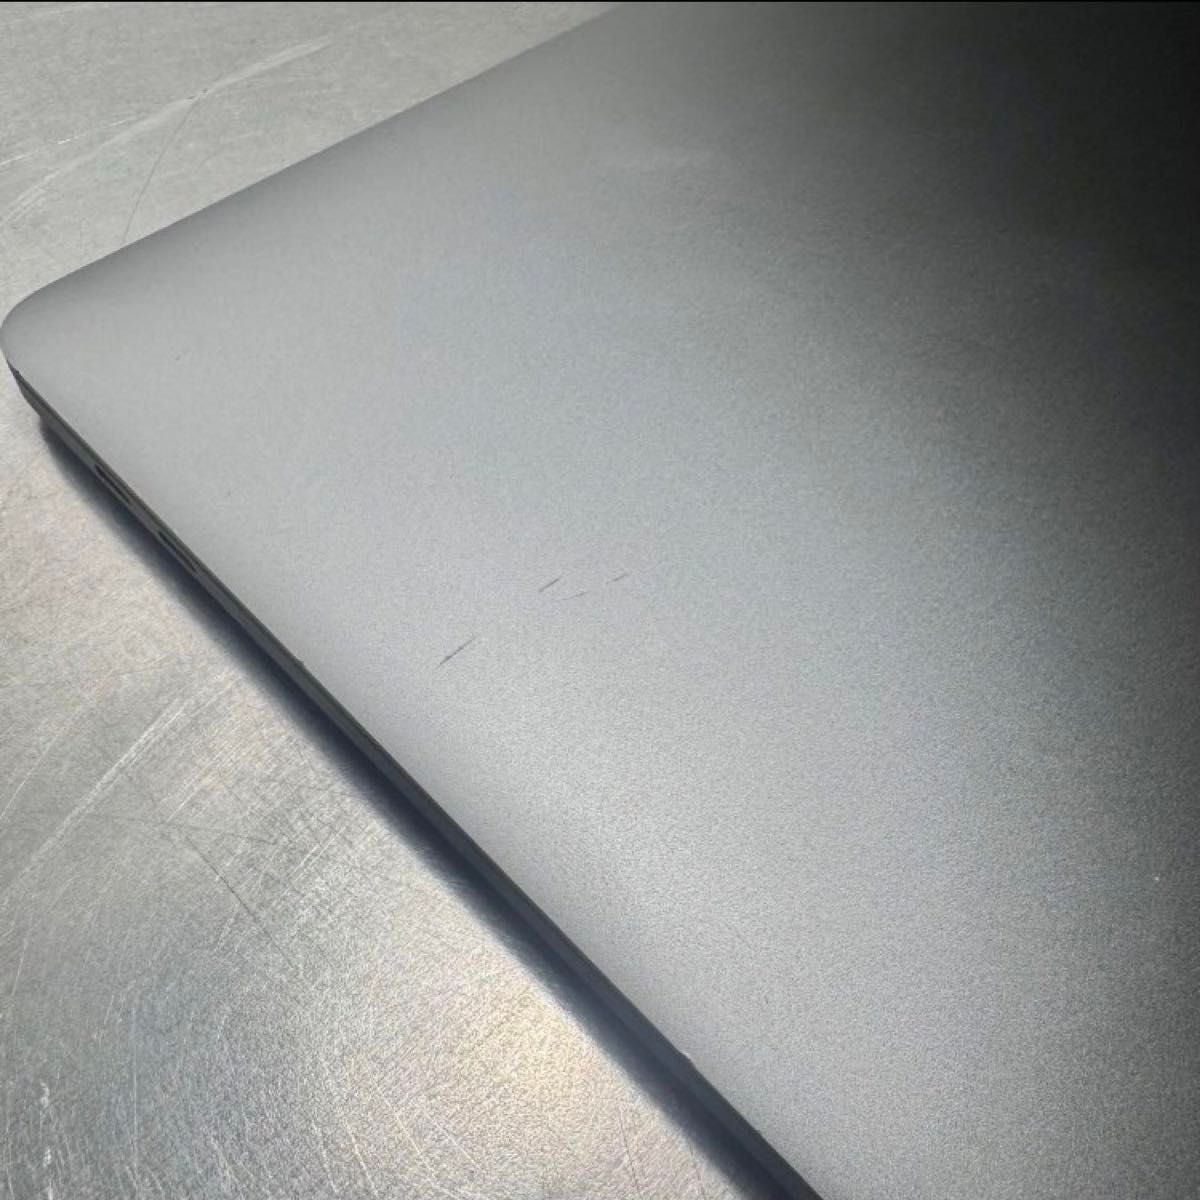 MacBook Pro2019 【15インチ】 SpaceGray 完動品格安★送料込み